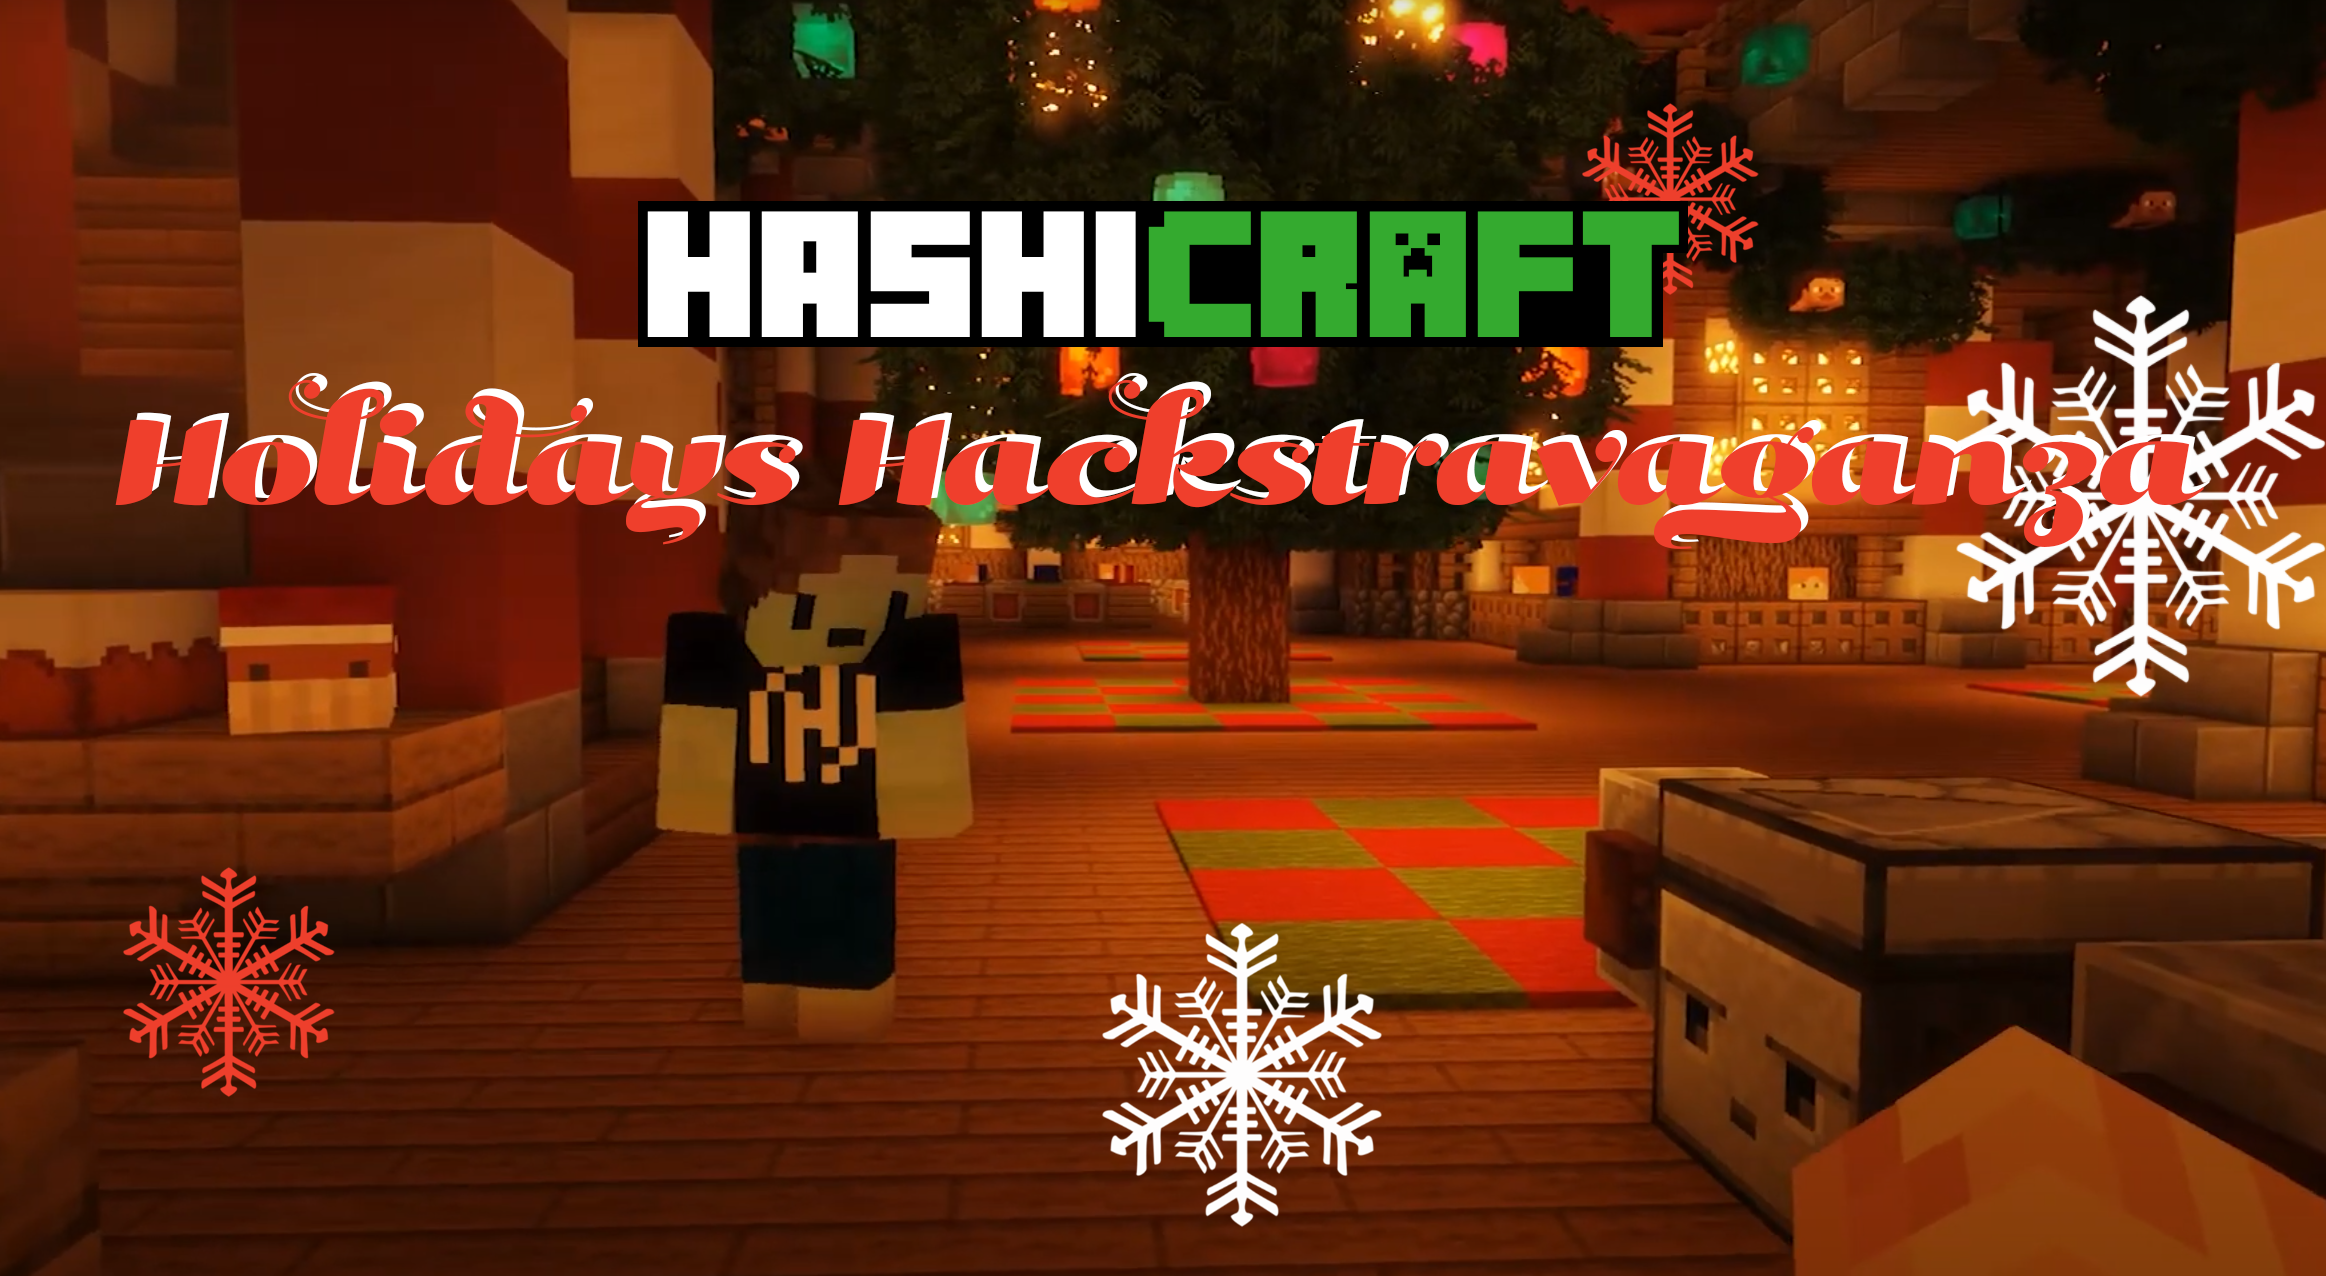 HashiCraft Holiday Hackathon Wrap Up